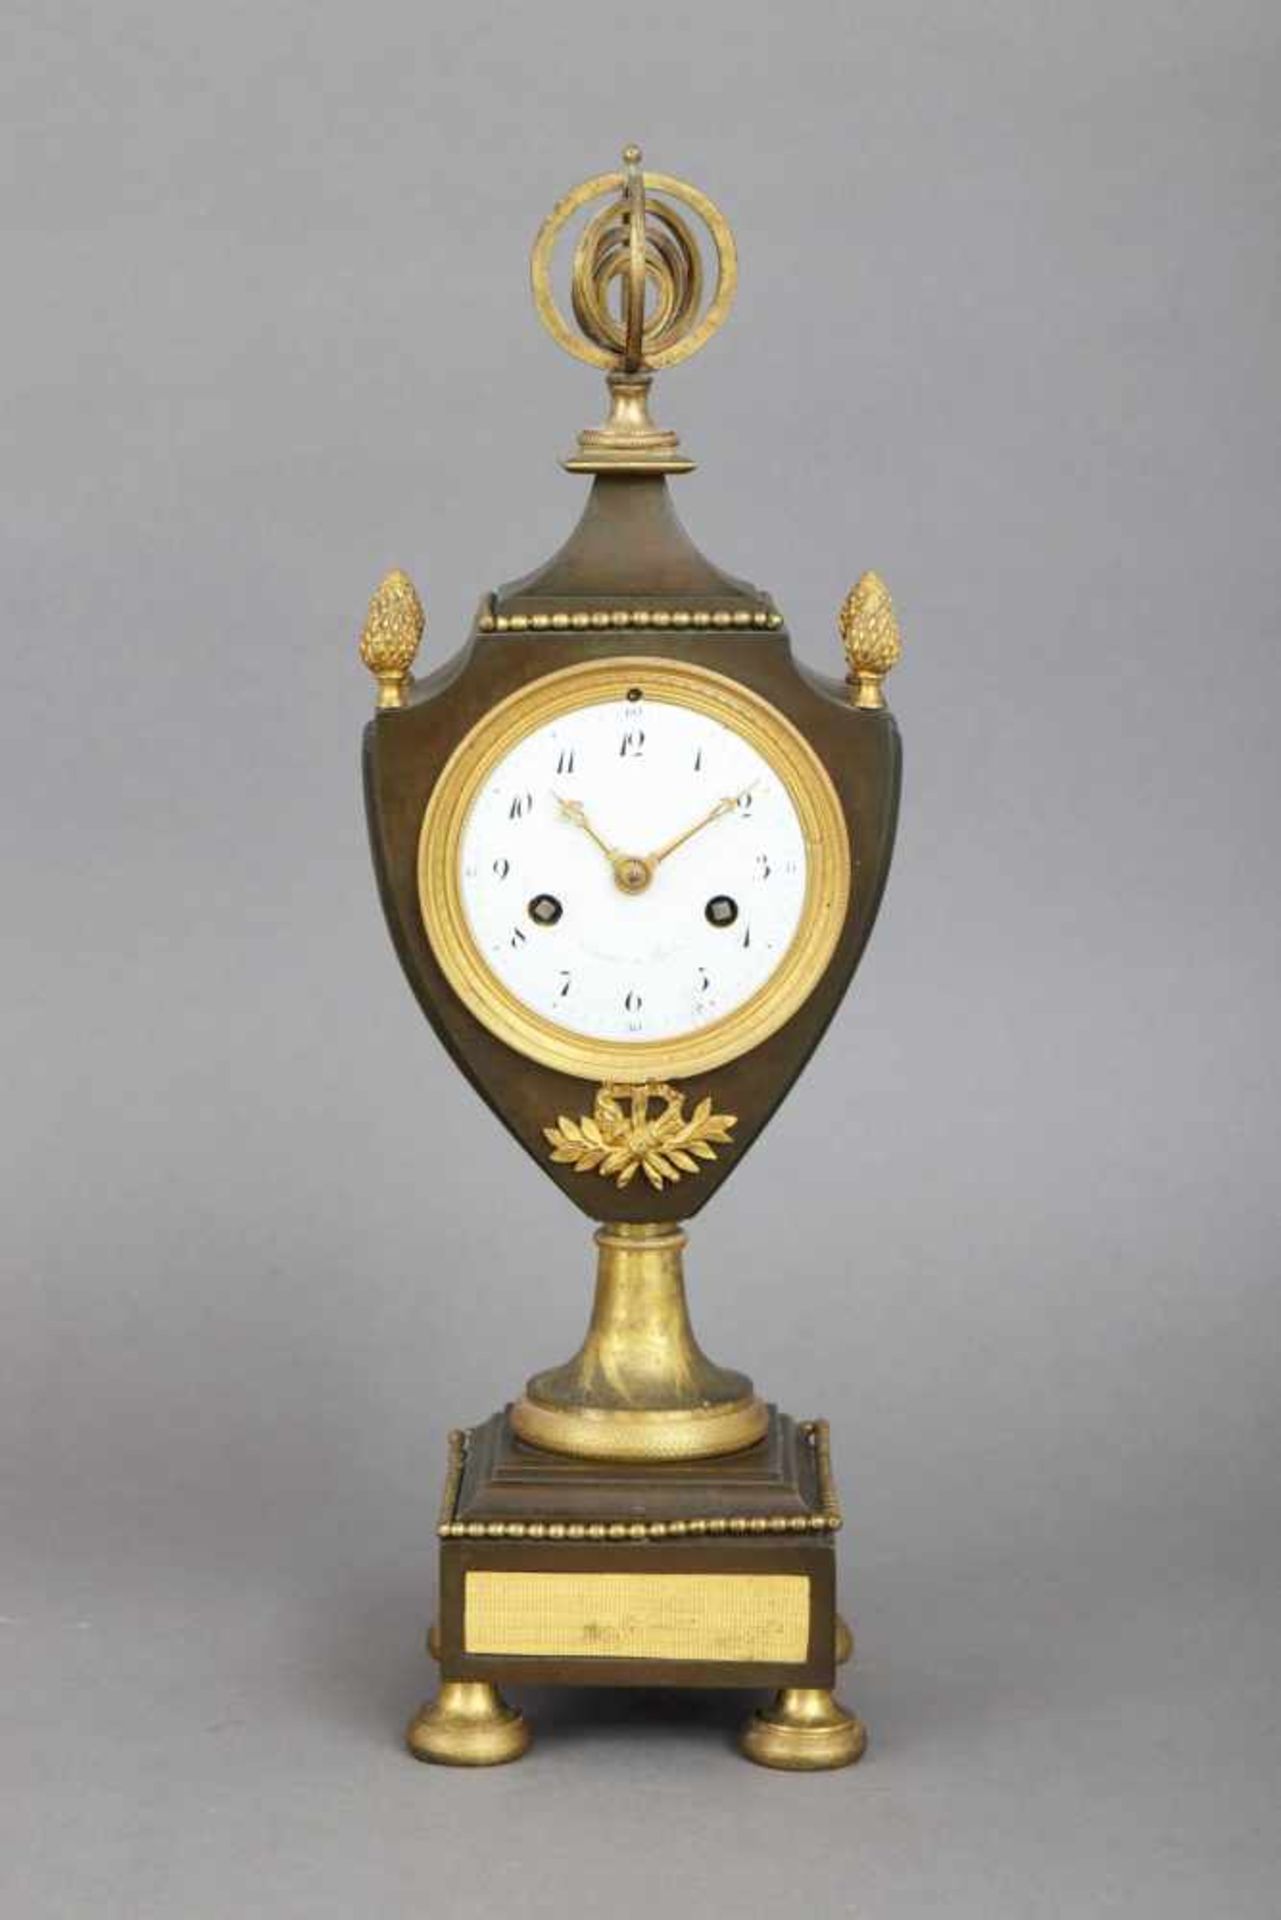 Pariser Vasenuhr im Stile des Empireum 1800, gebräunte und vergoldete Bronze, schildförmiger